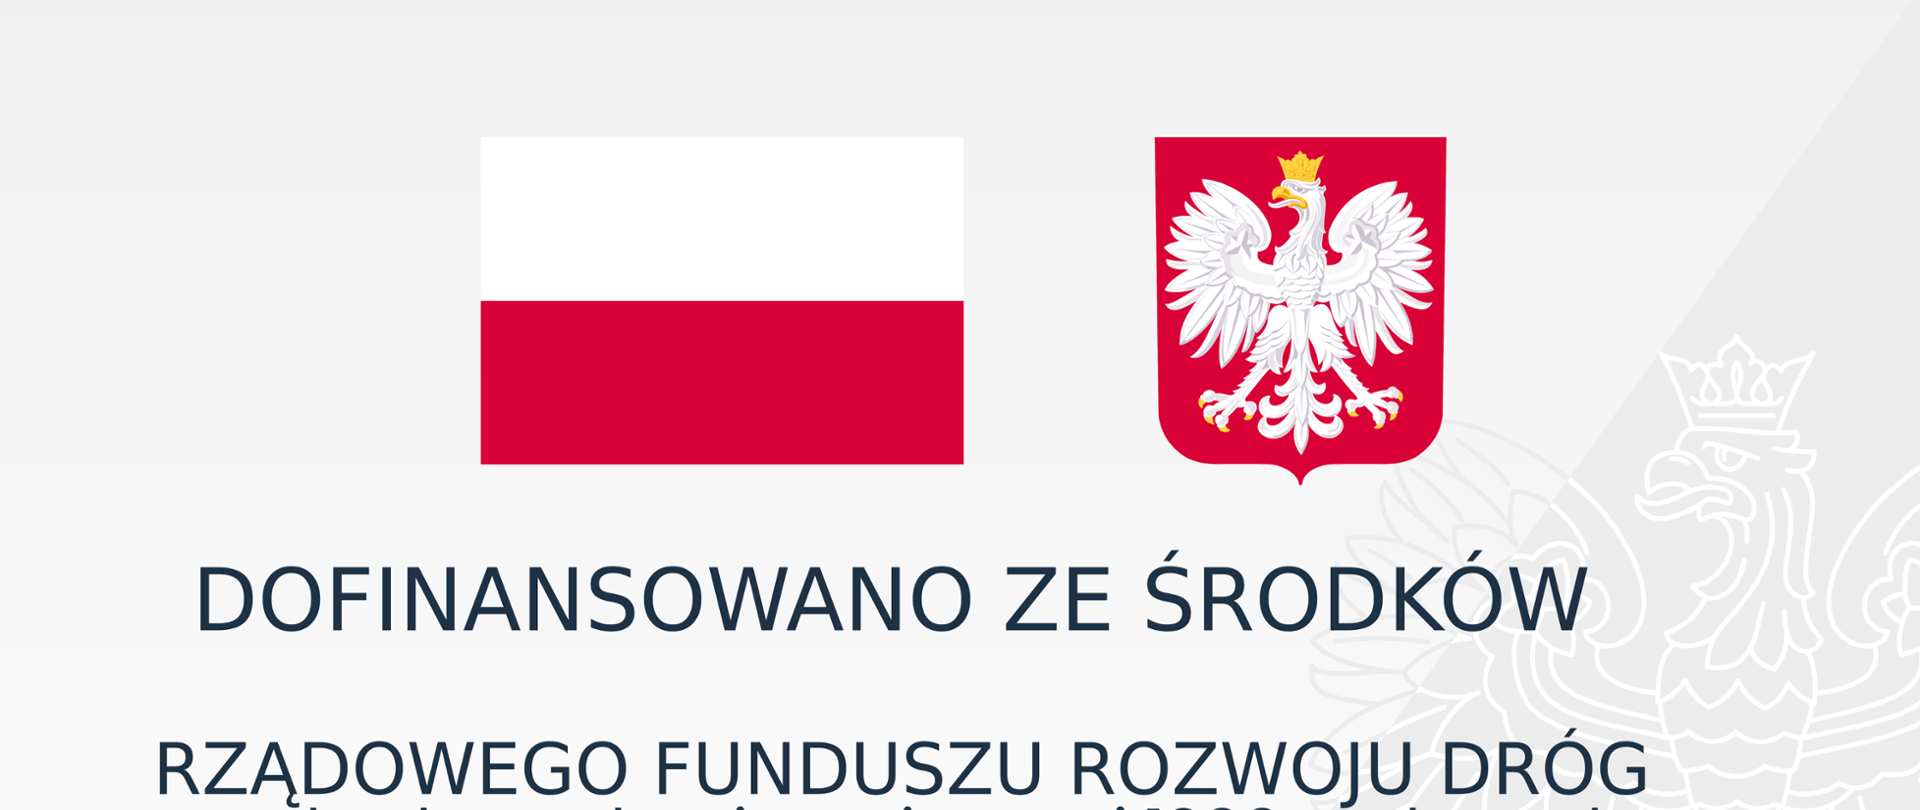 Na biało szarym tle biało czerwona flaga, obok godło Polski, poniżej informacja o dofinansowaniu przebudowy drogi powiatowej 1266K z Rządowego Funduszu Rozwoju Dróg